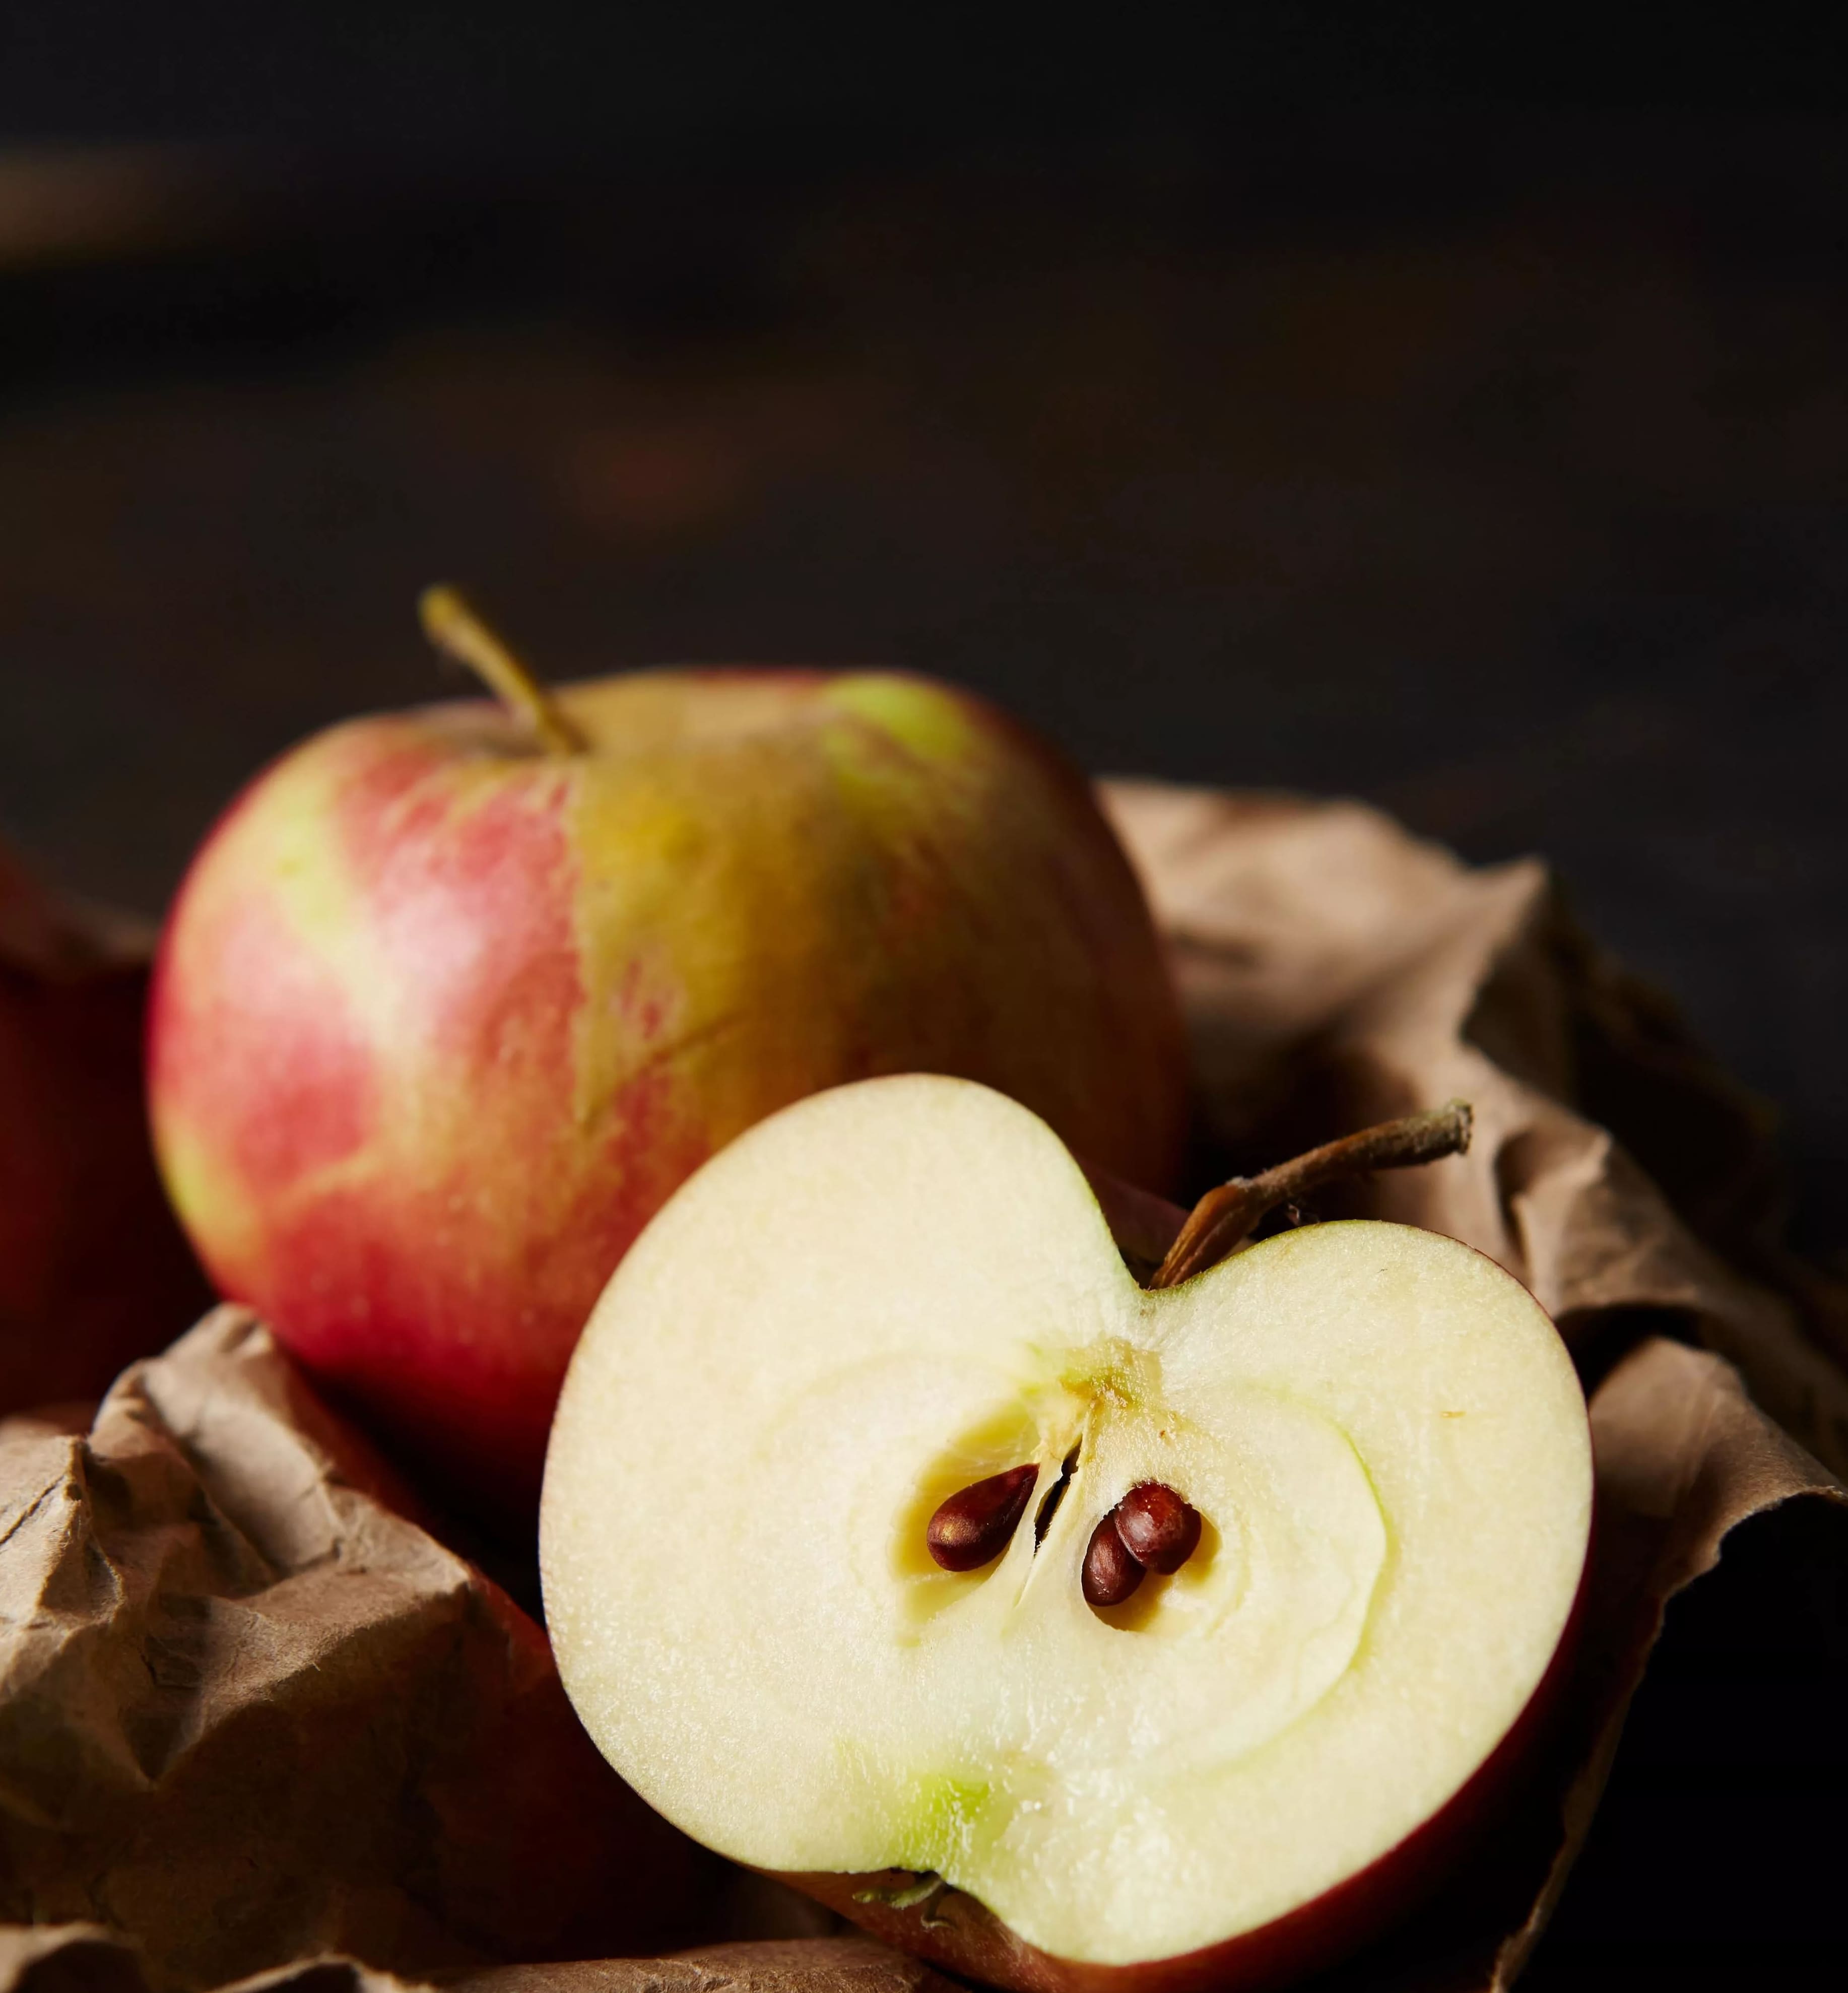 Miten kasvattaa omenoita ruokakaupasta saaduista siemenistä?